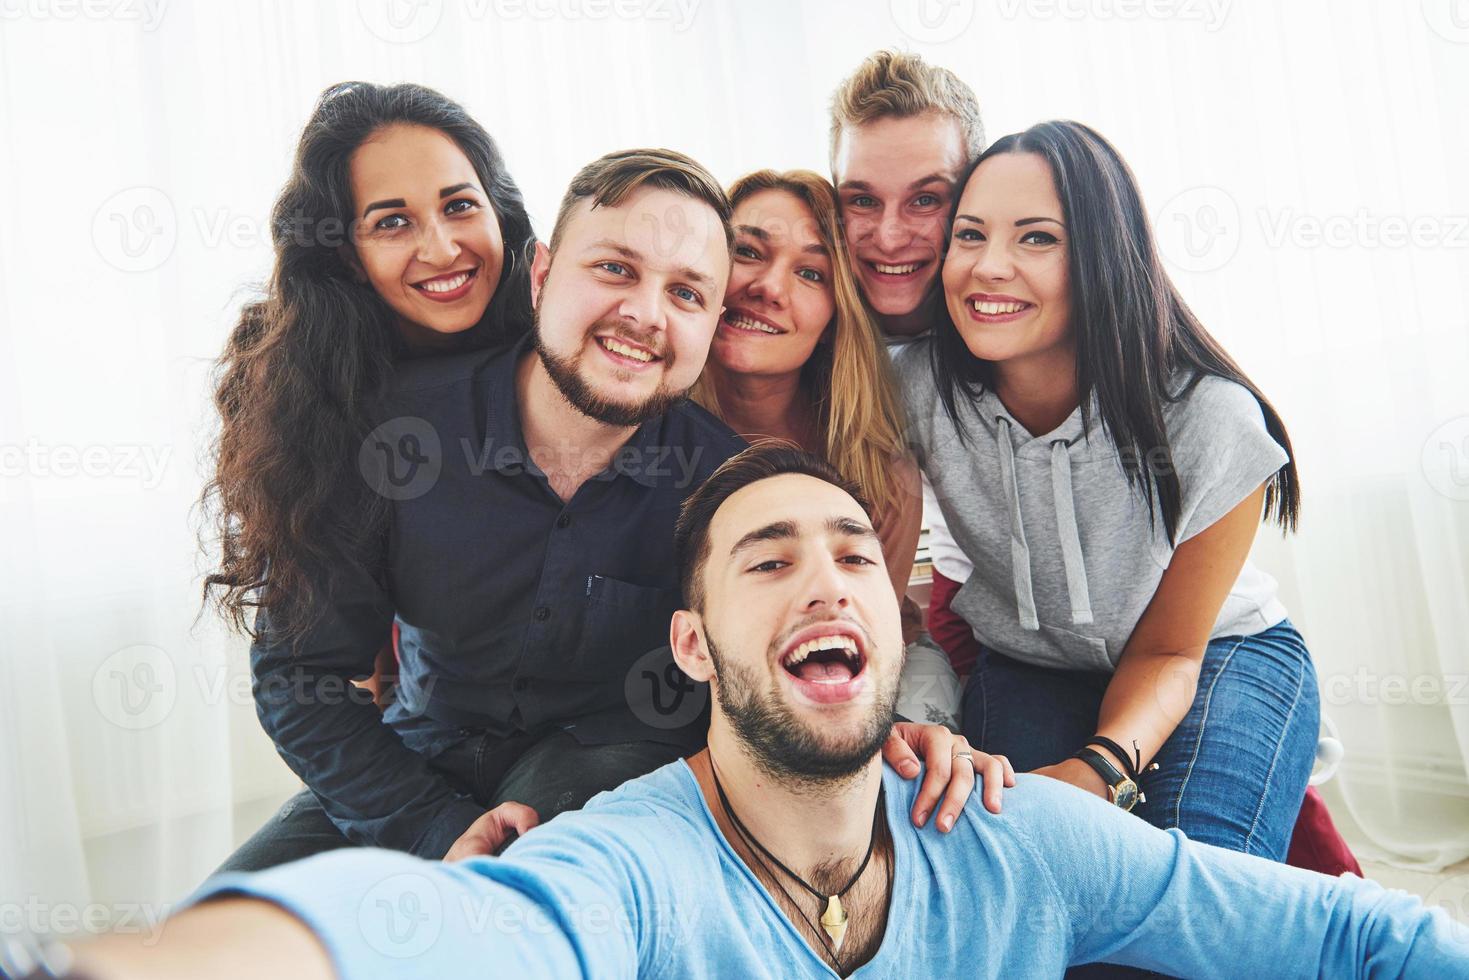 bästa vänner tar selfie utomhus med bakgrundsbelysning - lyckligt vänskapskoncept med unga människor som har roligt tillsammans foto